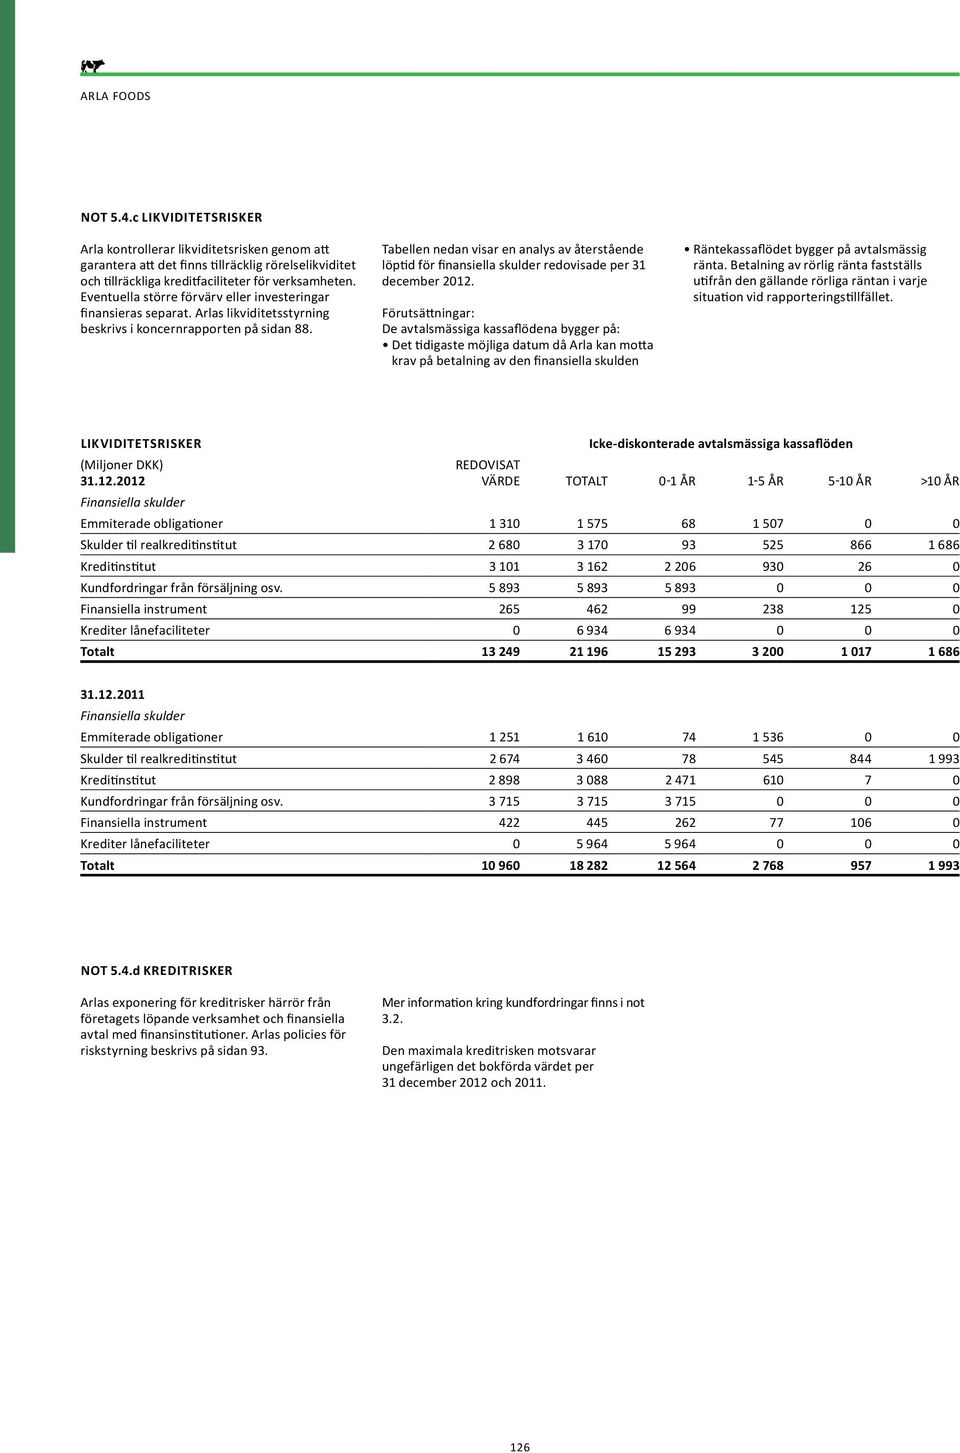 Tabellen nedan visar en analys av återstående löptid för finansiella skulder redovisade per 31 december 2012.